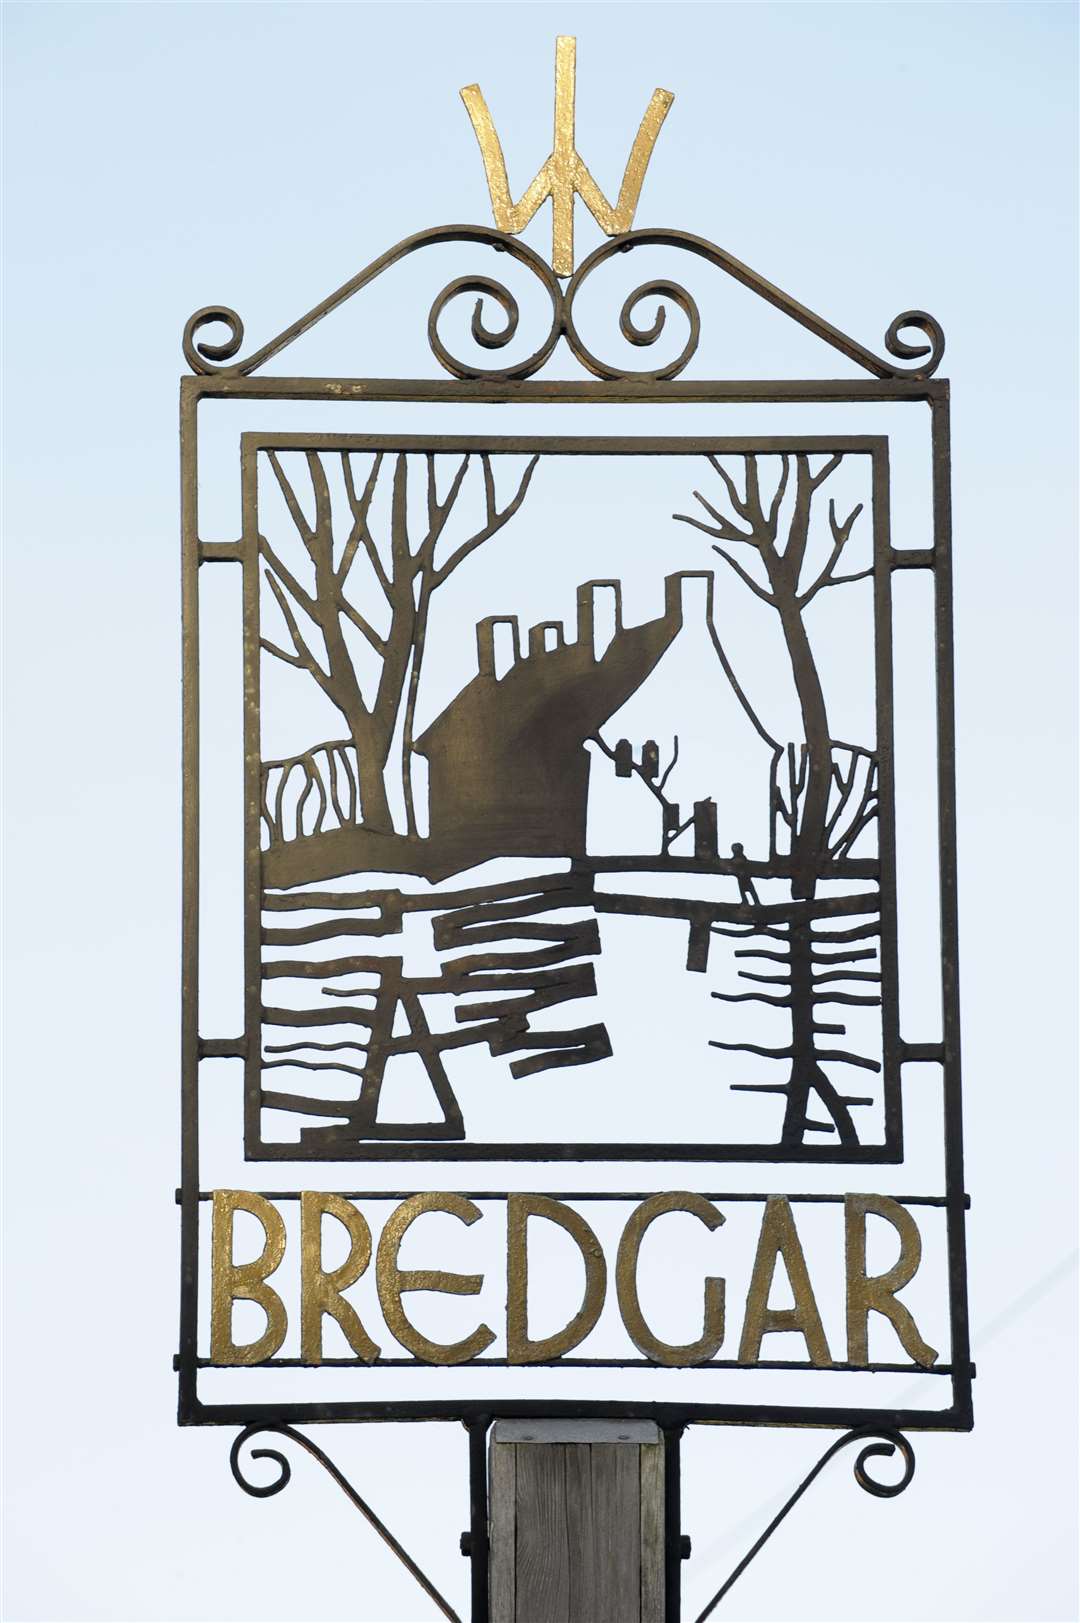 Bredgar village sign in Primrose Lane. File photo by Andy Payton